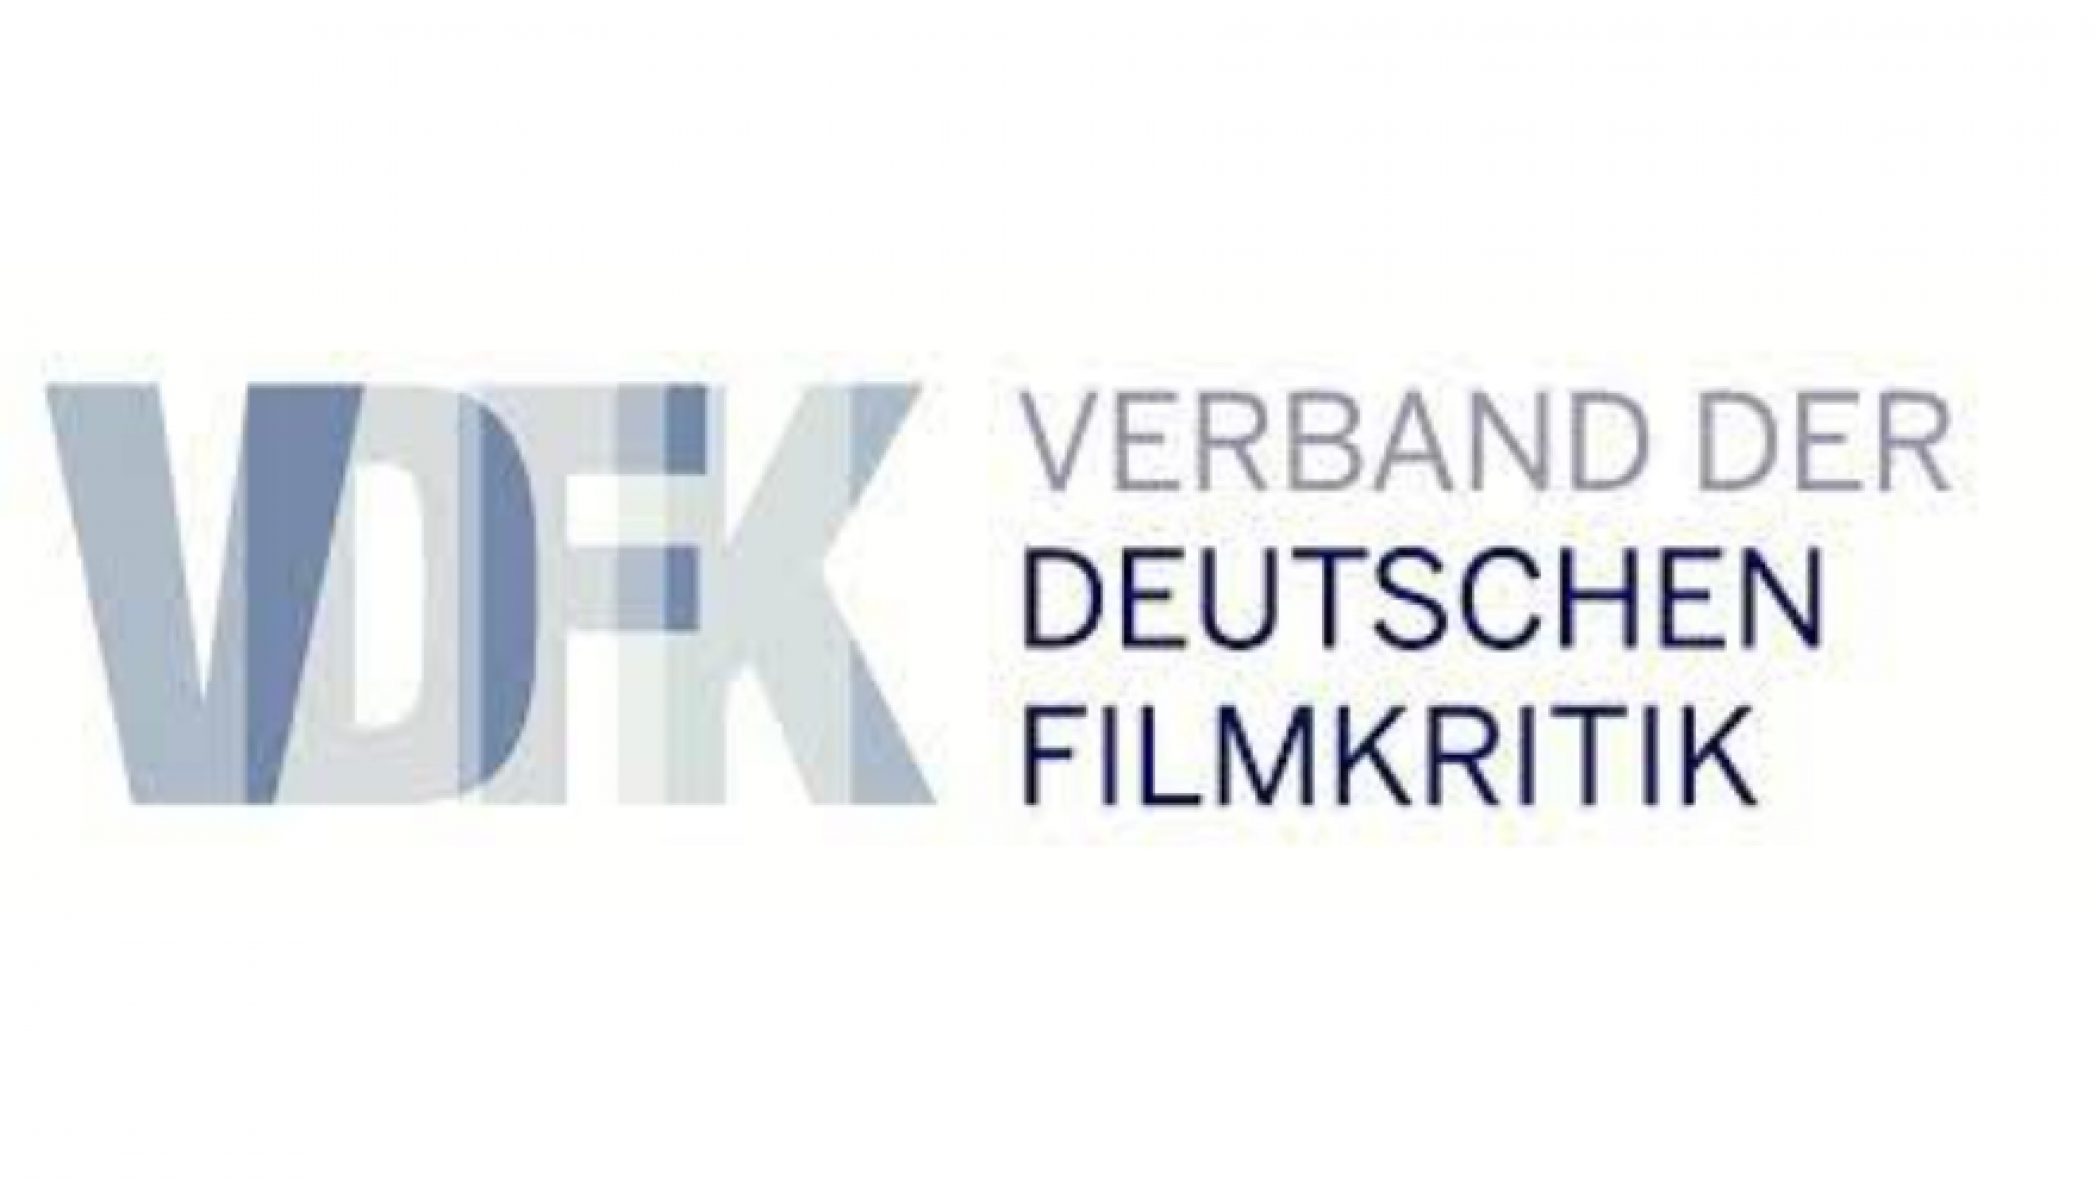 Verband der deutschen Filmkritik